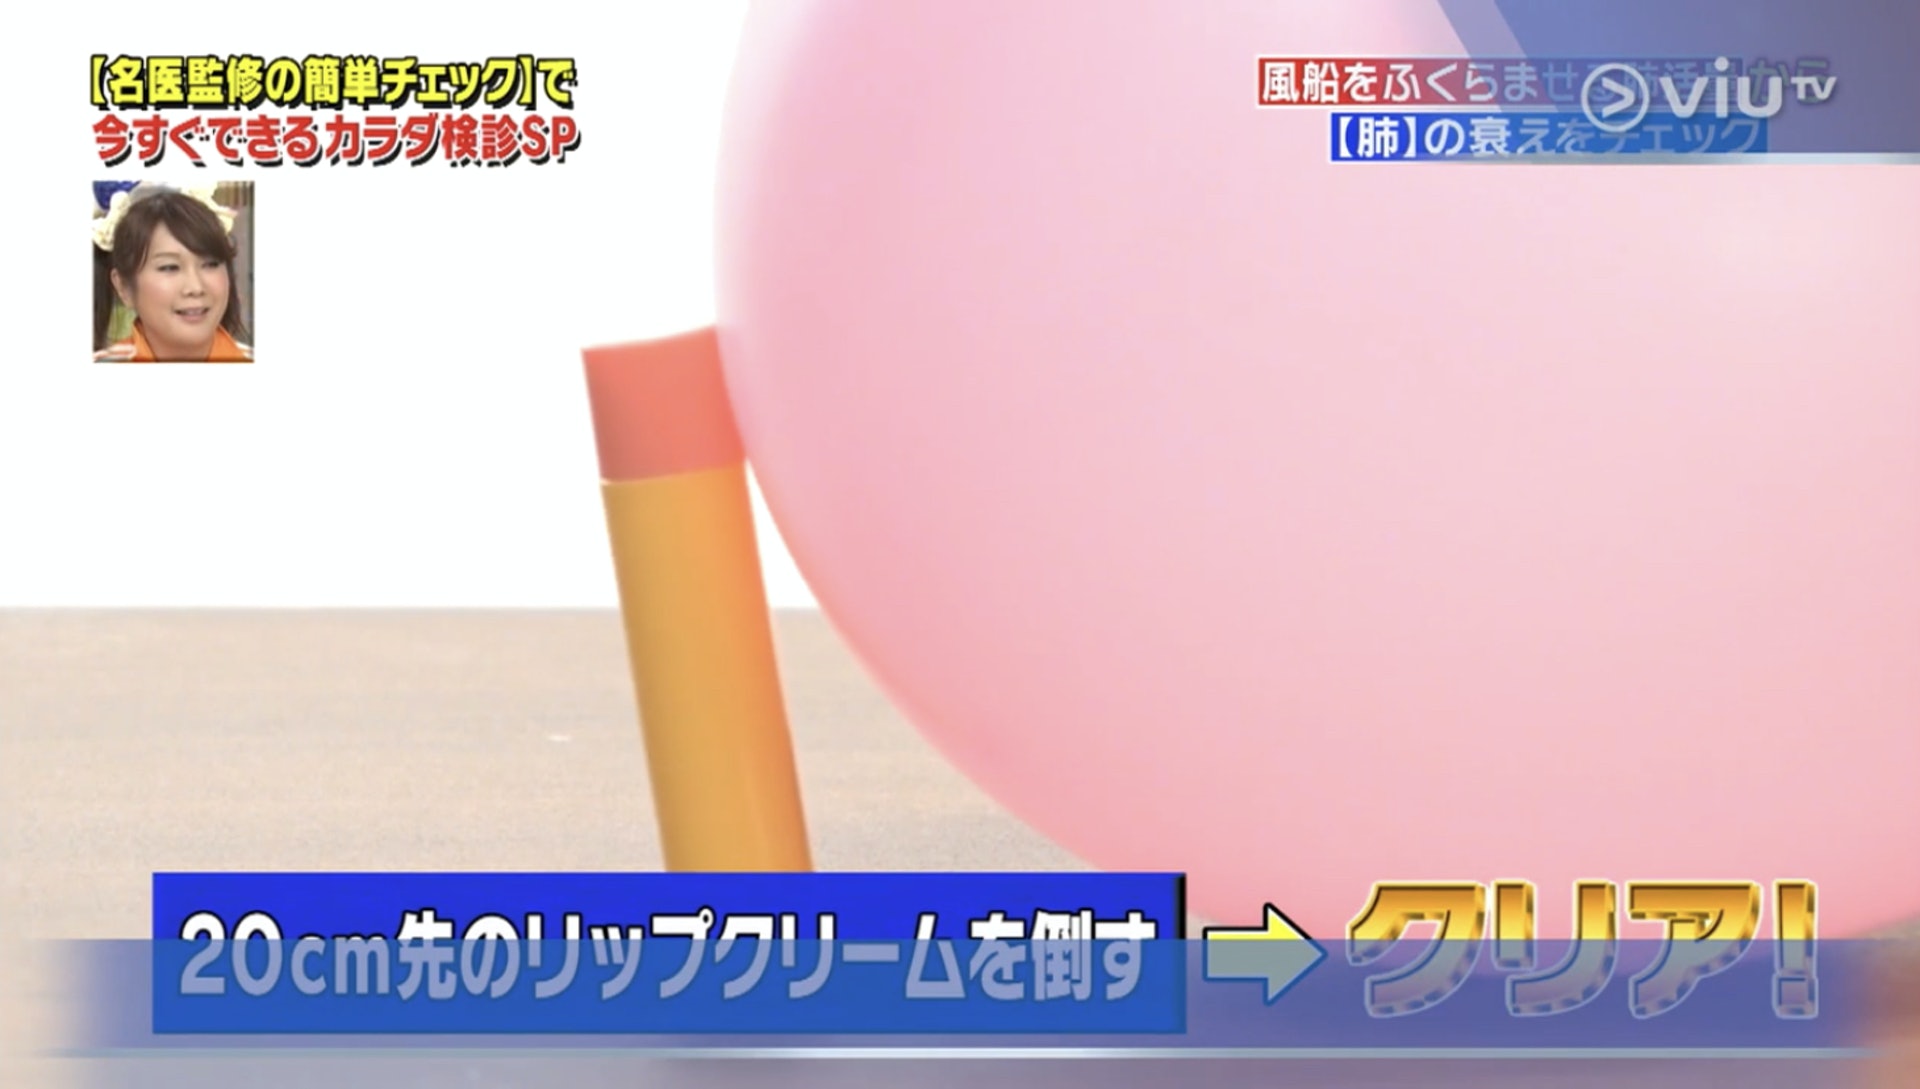 看看氣球能否推跌潤唇膏？（Viu TV《恐怖醫學》影片截圖）